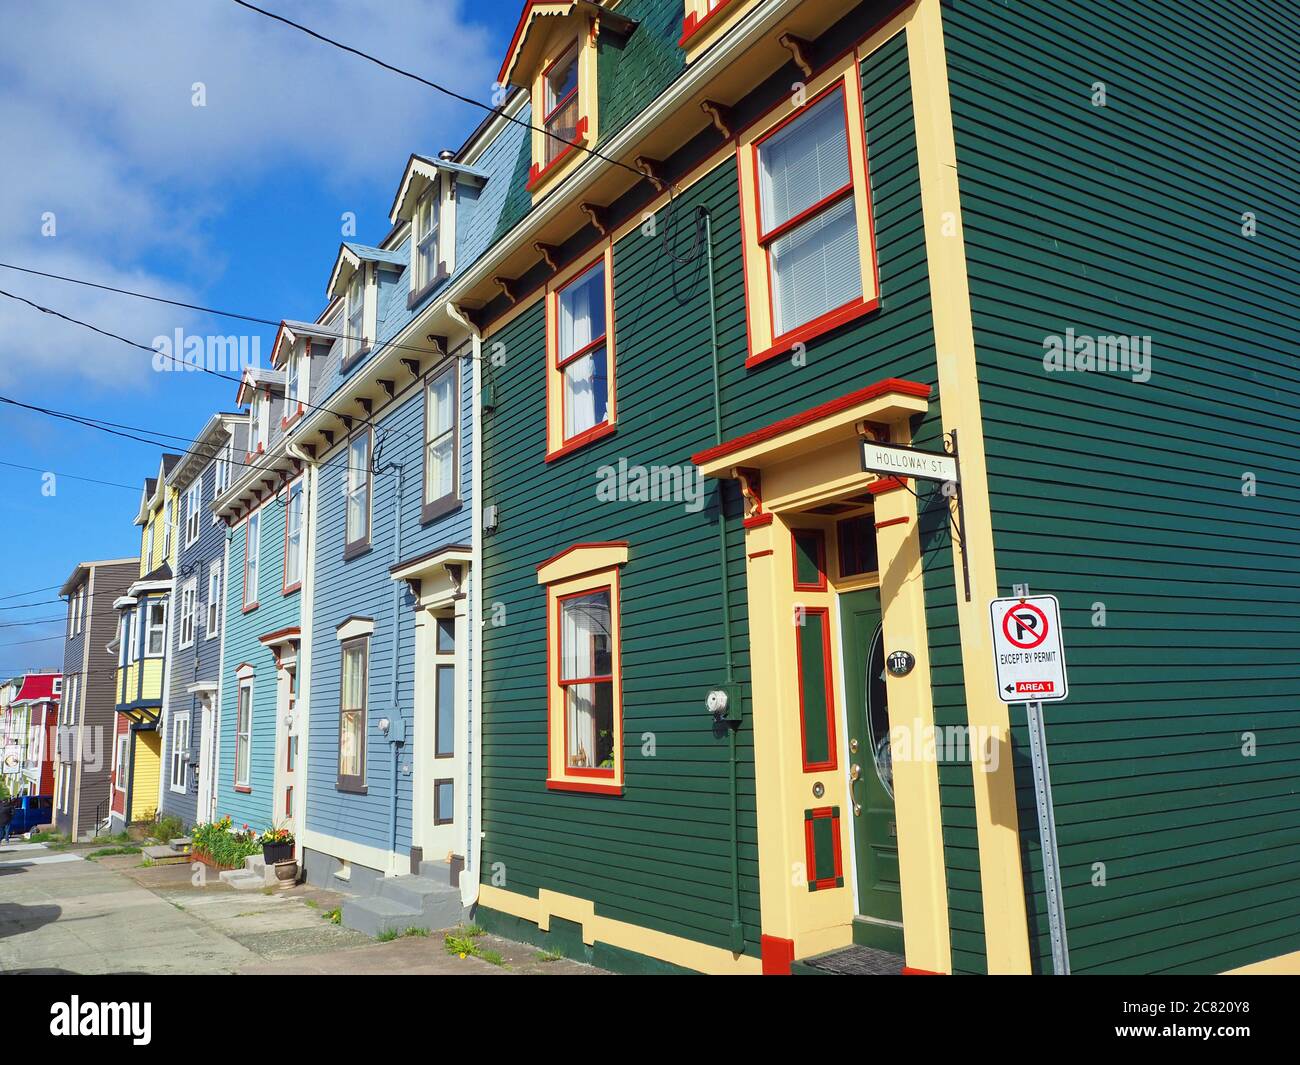 Holloway St. St John’s, Newfoundland, Canada Stock Photo